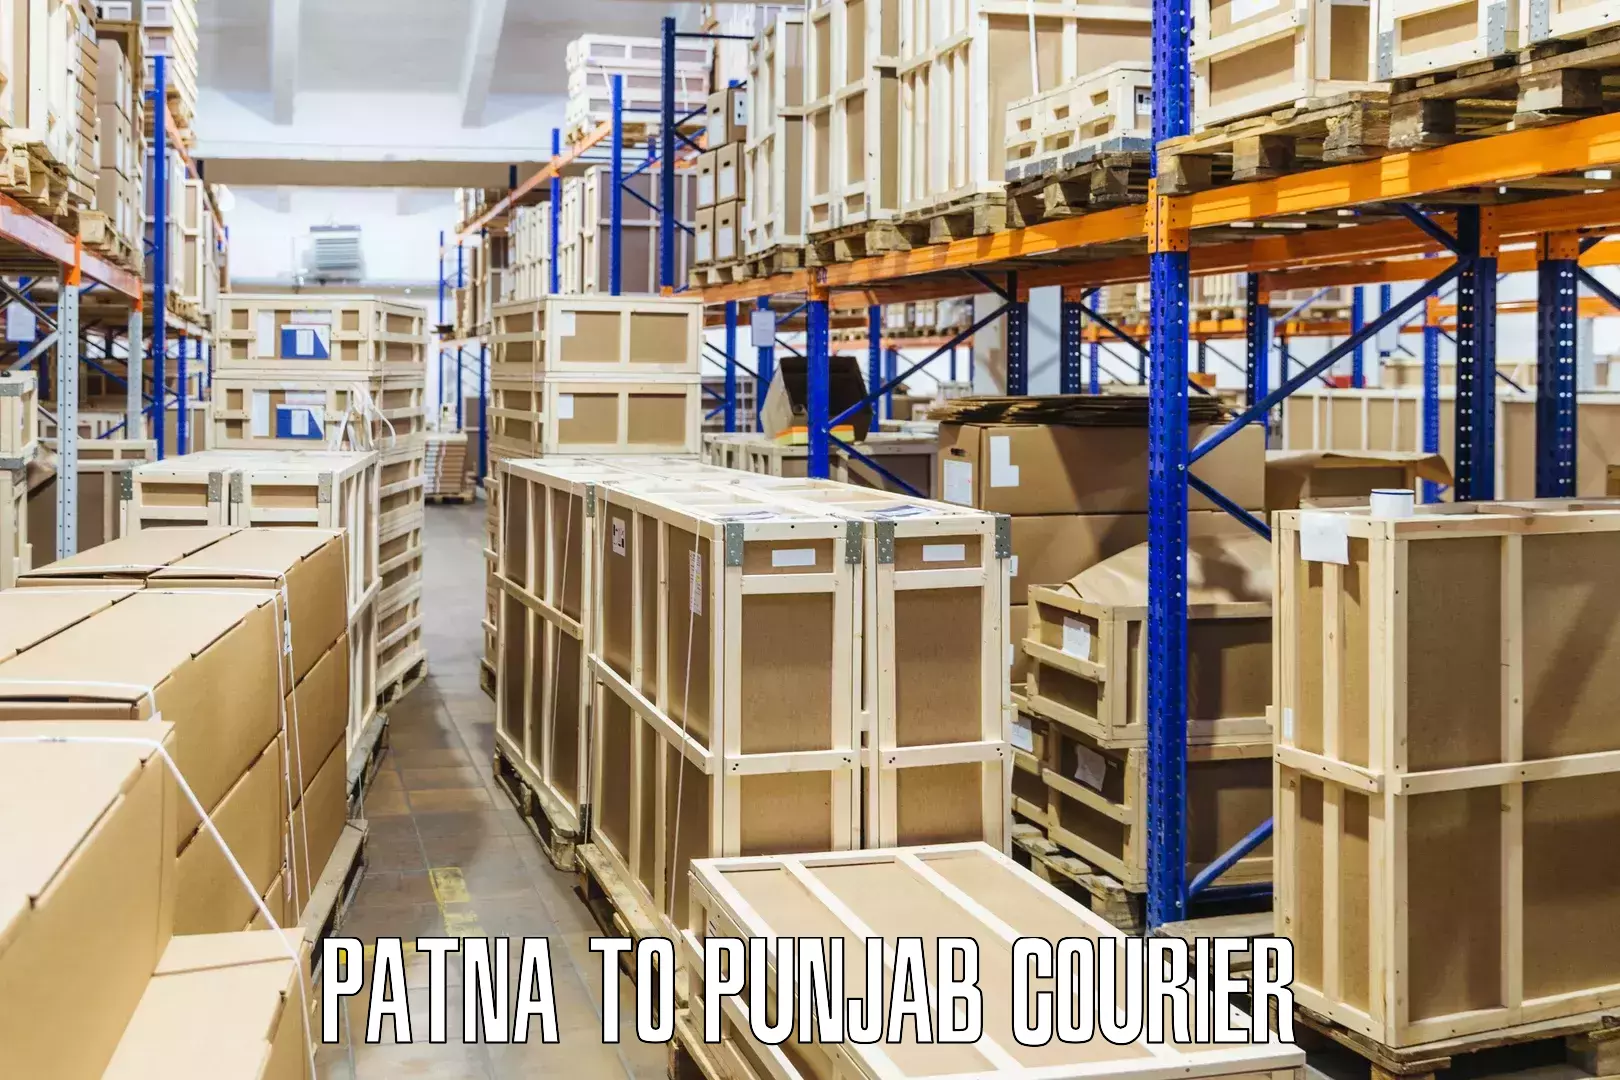 Holiday shipping services Patna to Punjab